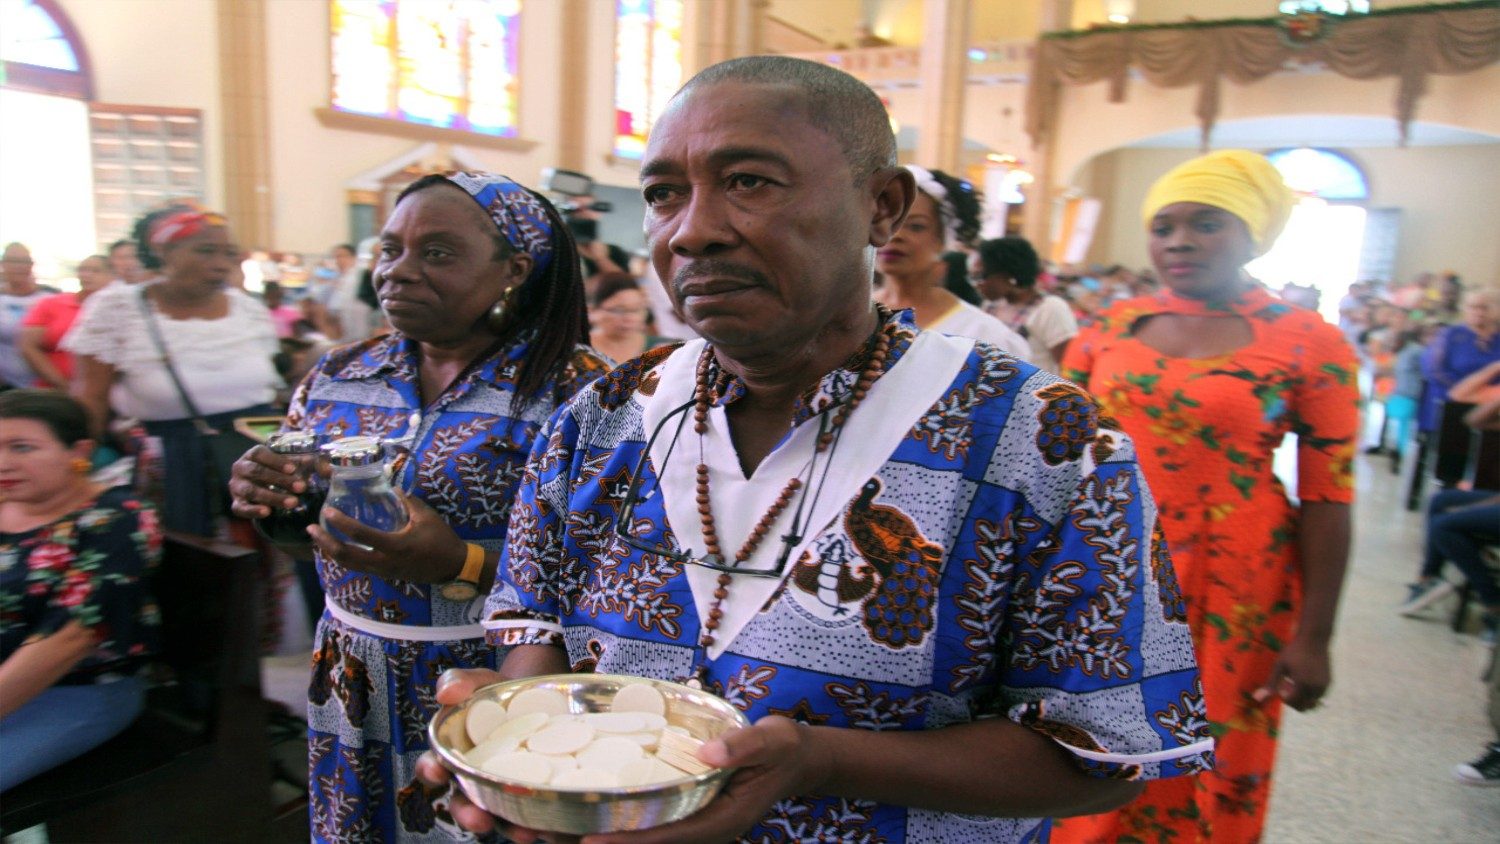 La Iglesia debe replantear su labor entre indígenas y afroamericanos